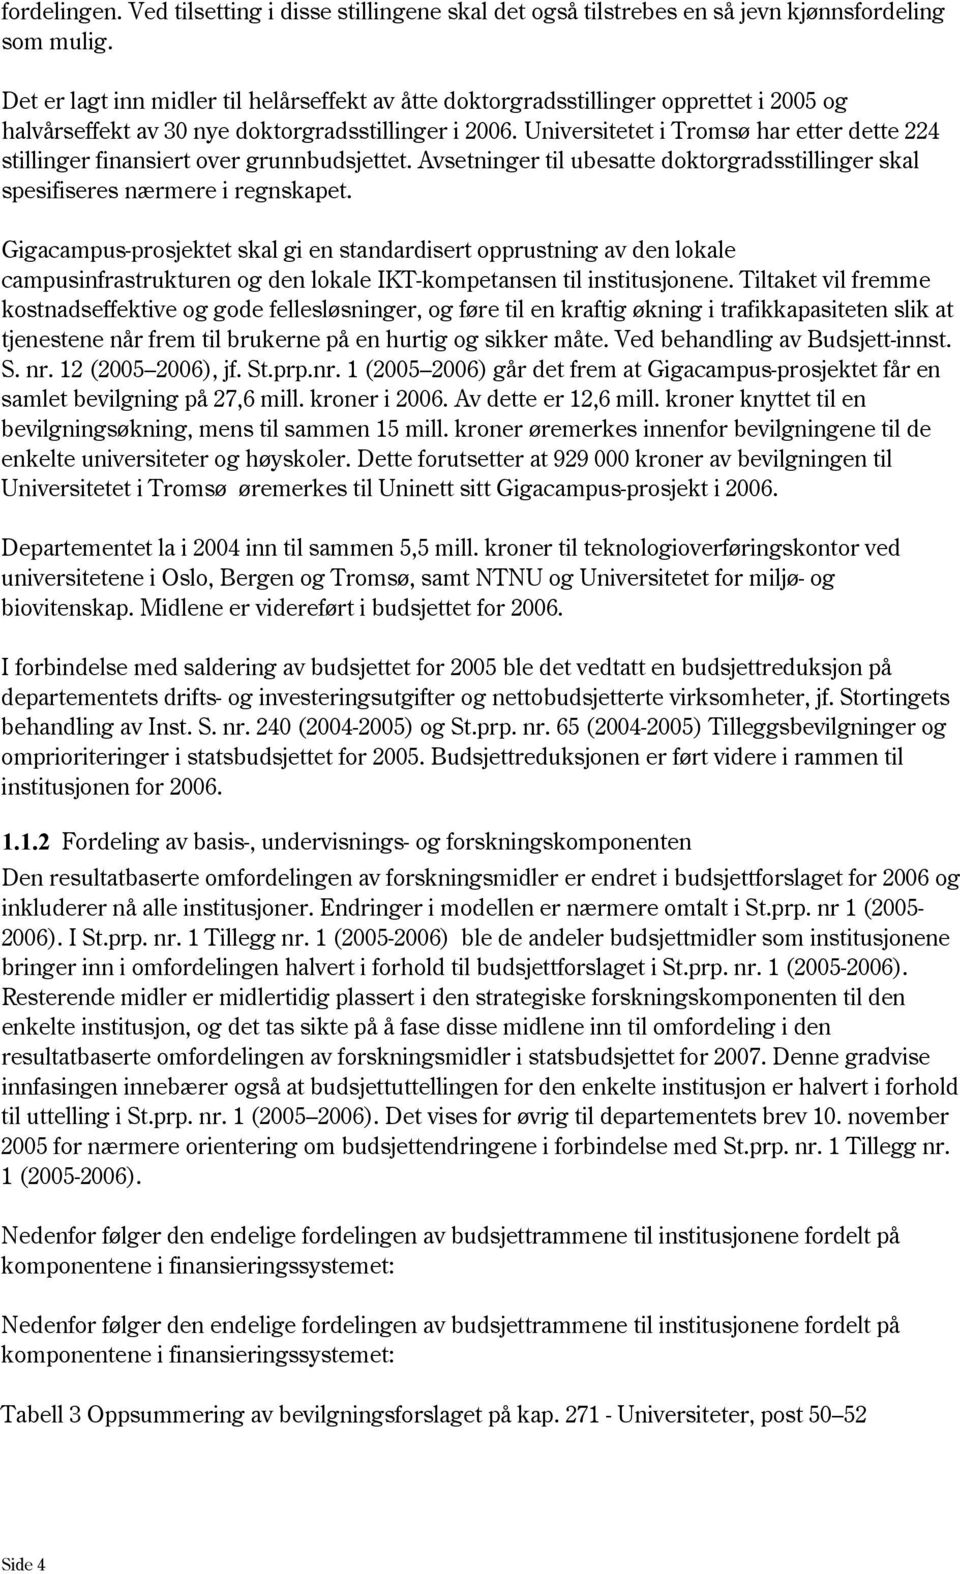 Universitetet i Tromsø har etter dette 224 stillinger finansiert over grunnbudsjettet. Avsetninger til ubesatte doktorgradsstillinger skal spesifiseres nærmere i regnskapet.